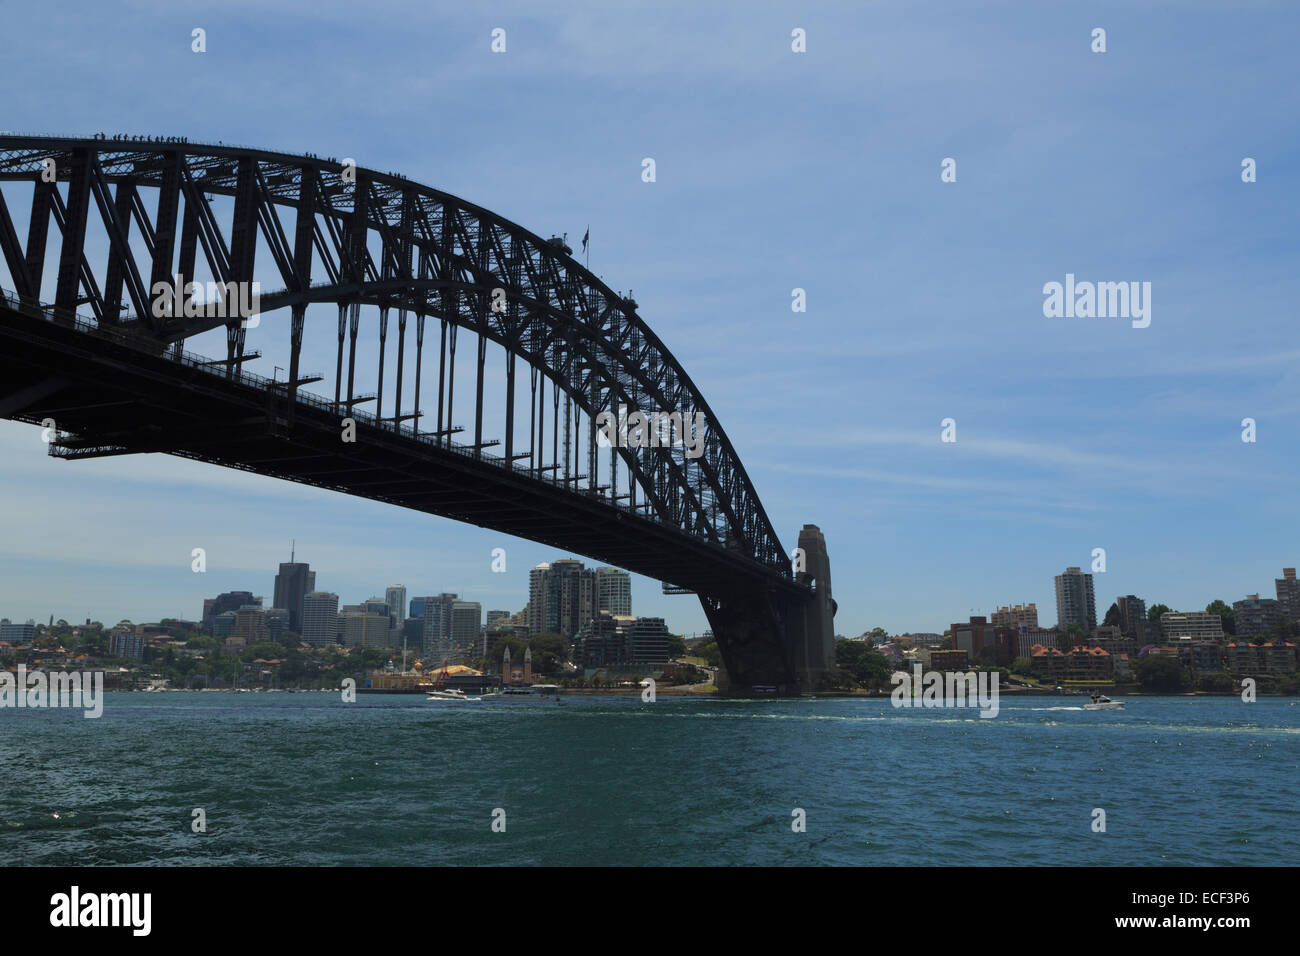 Ein Foto von der Sydney Harbour Bridge in Australien. Die Sydney Harbour Bridge ist ein Stahl durch Bogenbrücke über Sydney H Stockfoto